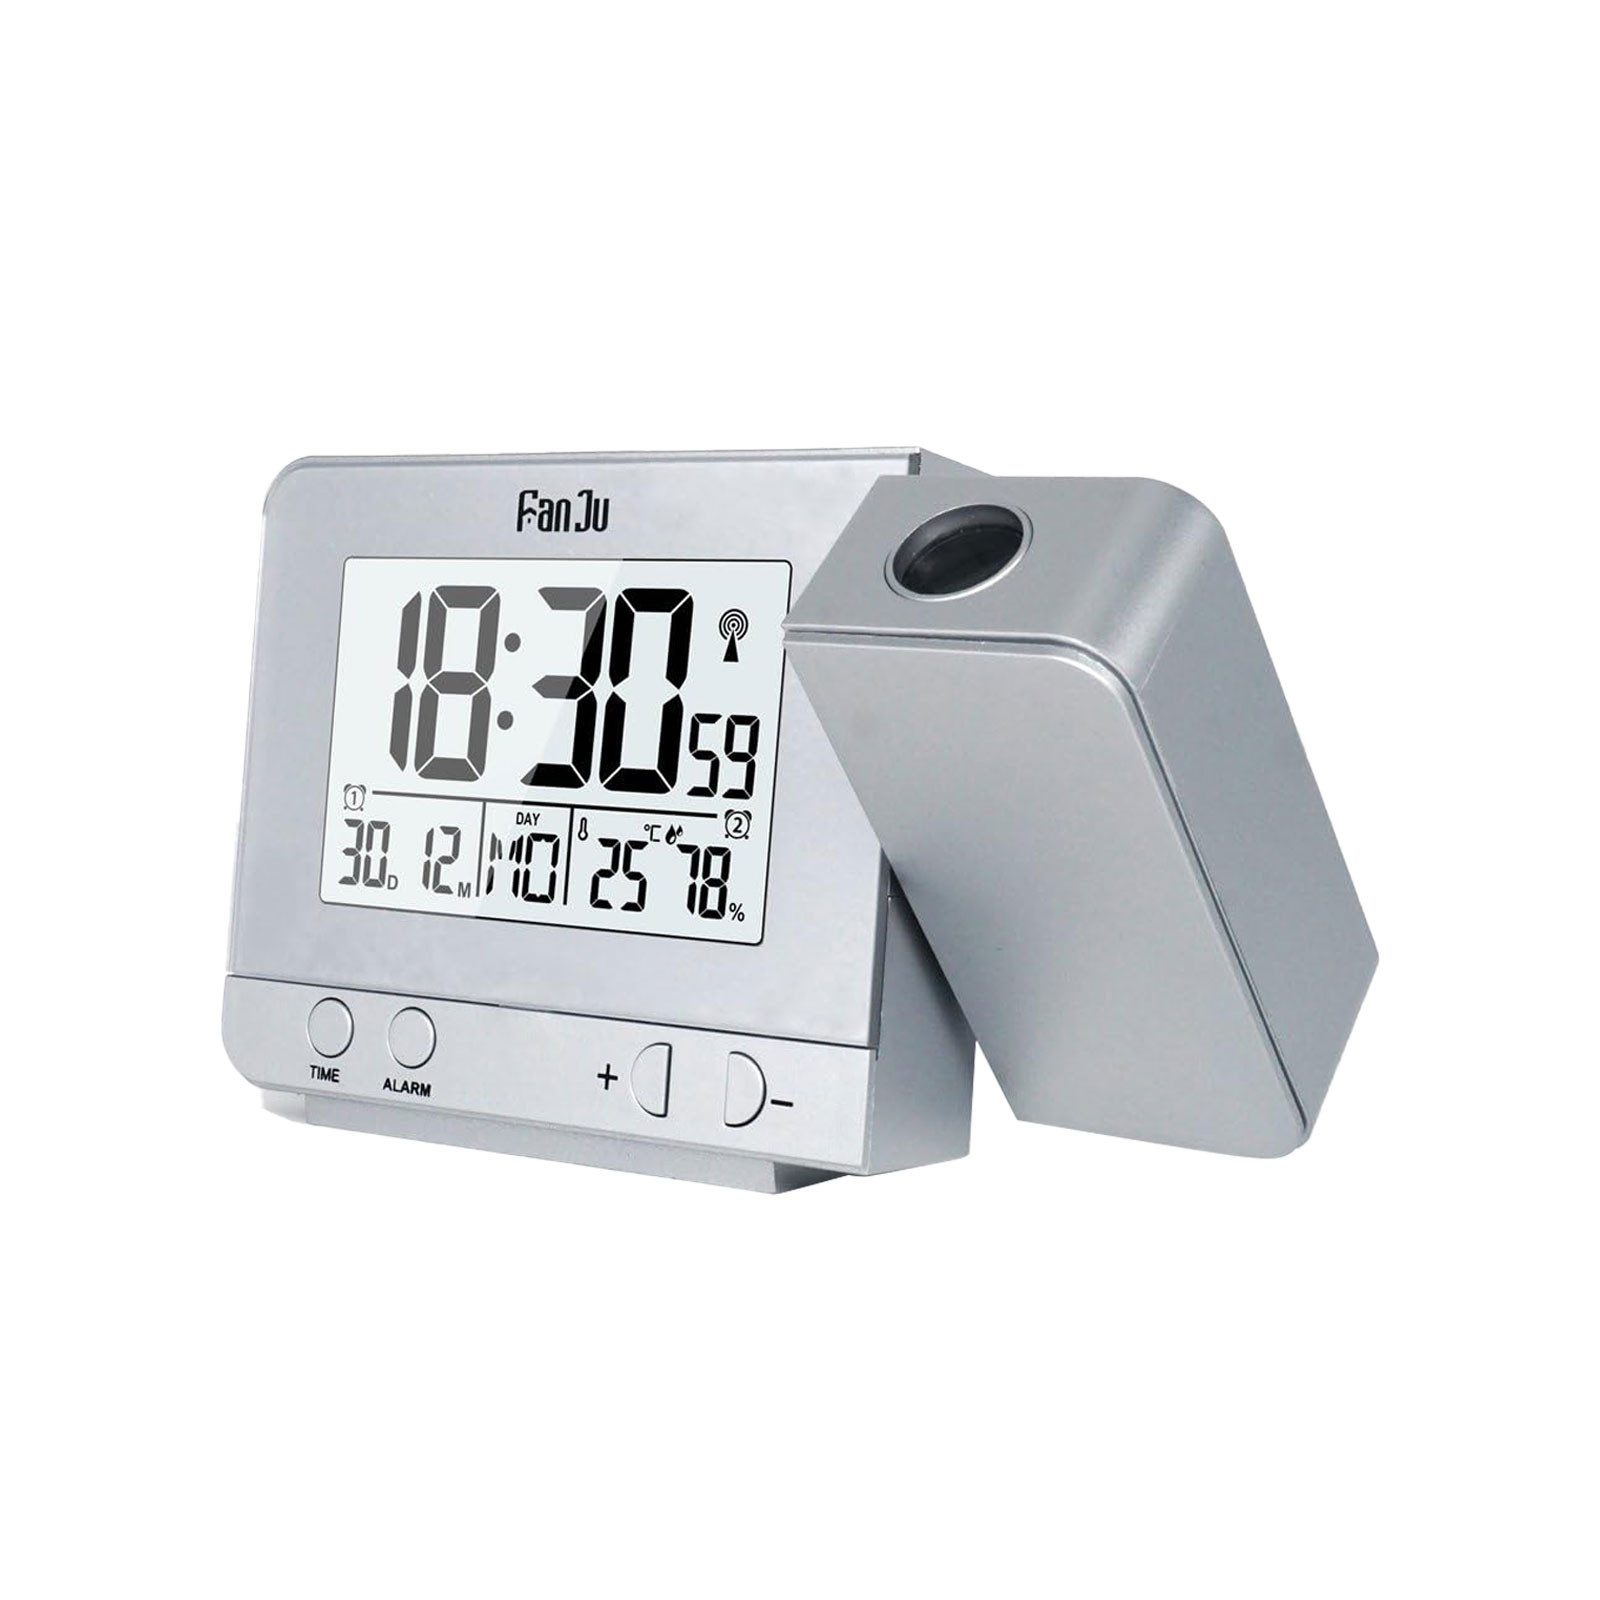 MODFU Projektionswecker Digital Wecker Uhr Digitalwecker Projektion LED Alarm Projektionsuhr ohne Akku mit Außensensor Funk 120 ° Dual-Alarm Temperatur Zeit 12/24H